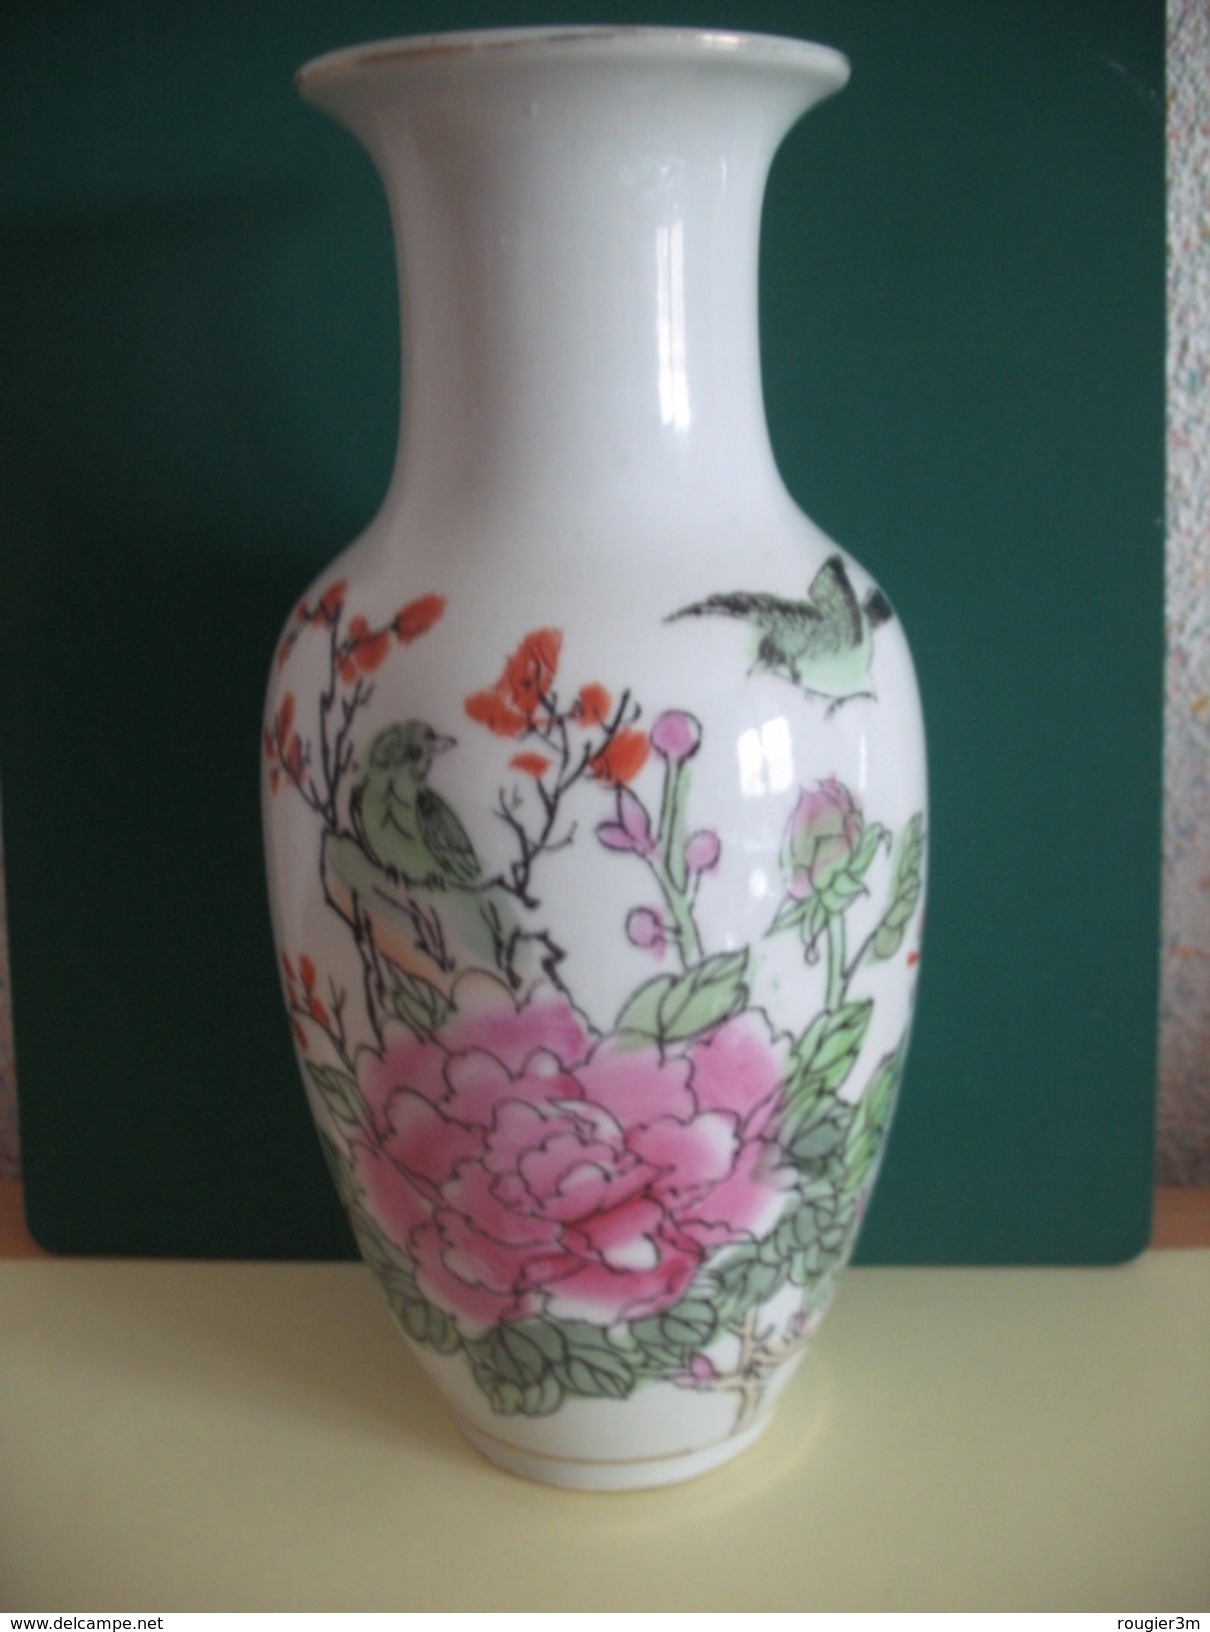 145 - Vase Chinois - Décor Fleurs Et Oiseaux - Zhongho Chao Cai - Années 70 - Art Asiatique